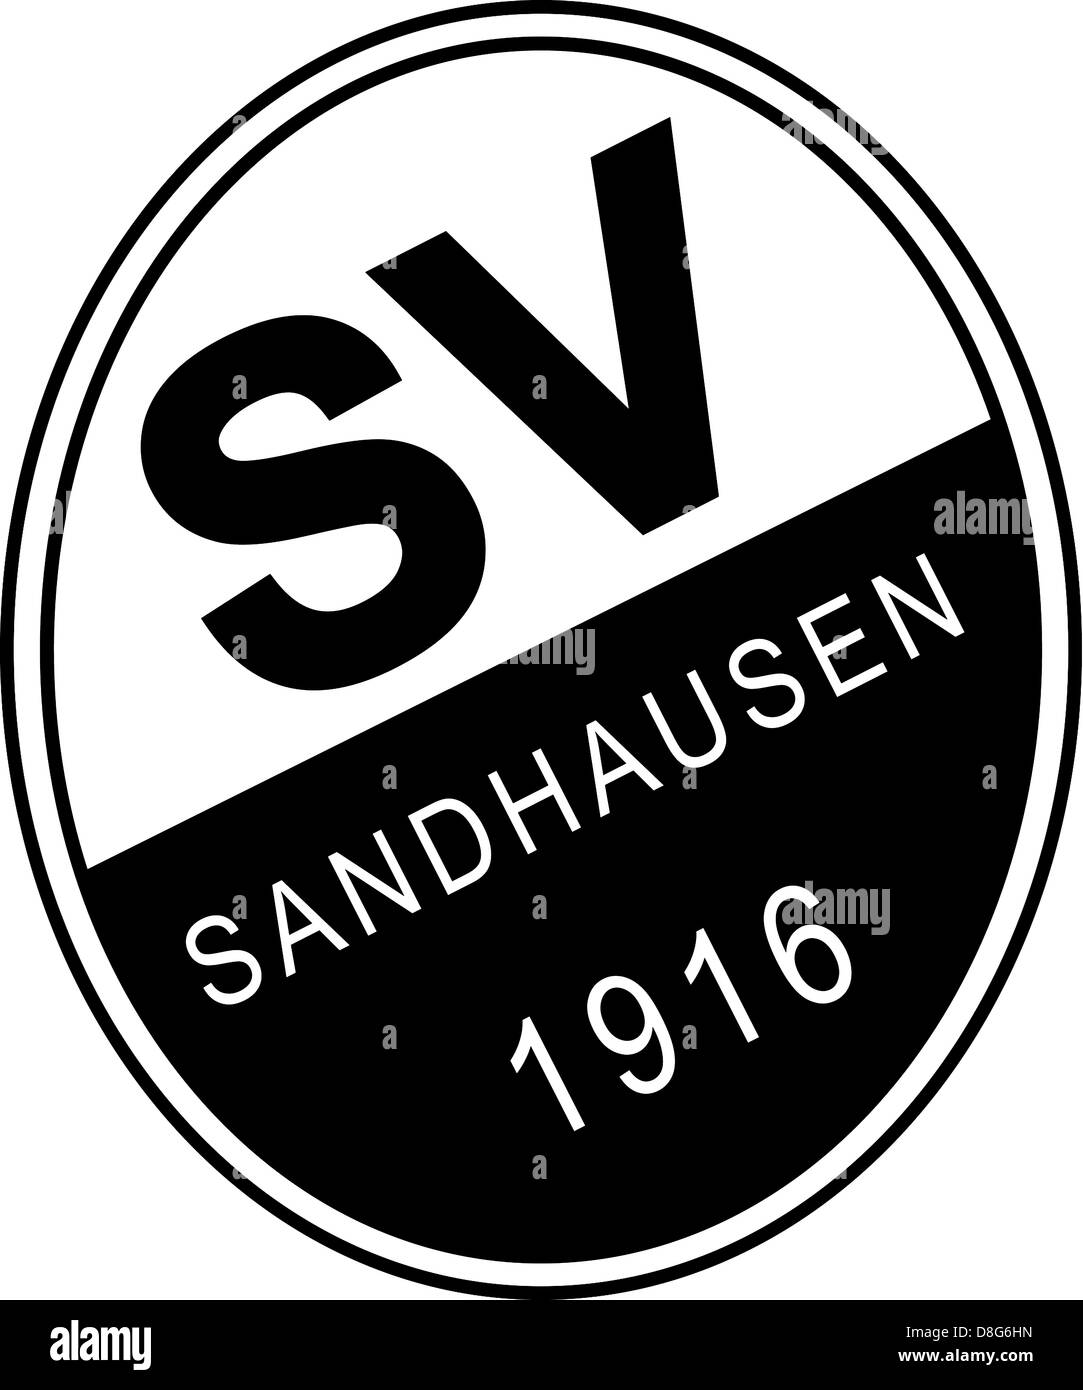 Logo de l'équipe allemande de football SV Sandhausen. Banque D'Images